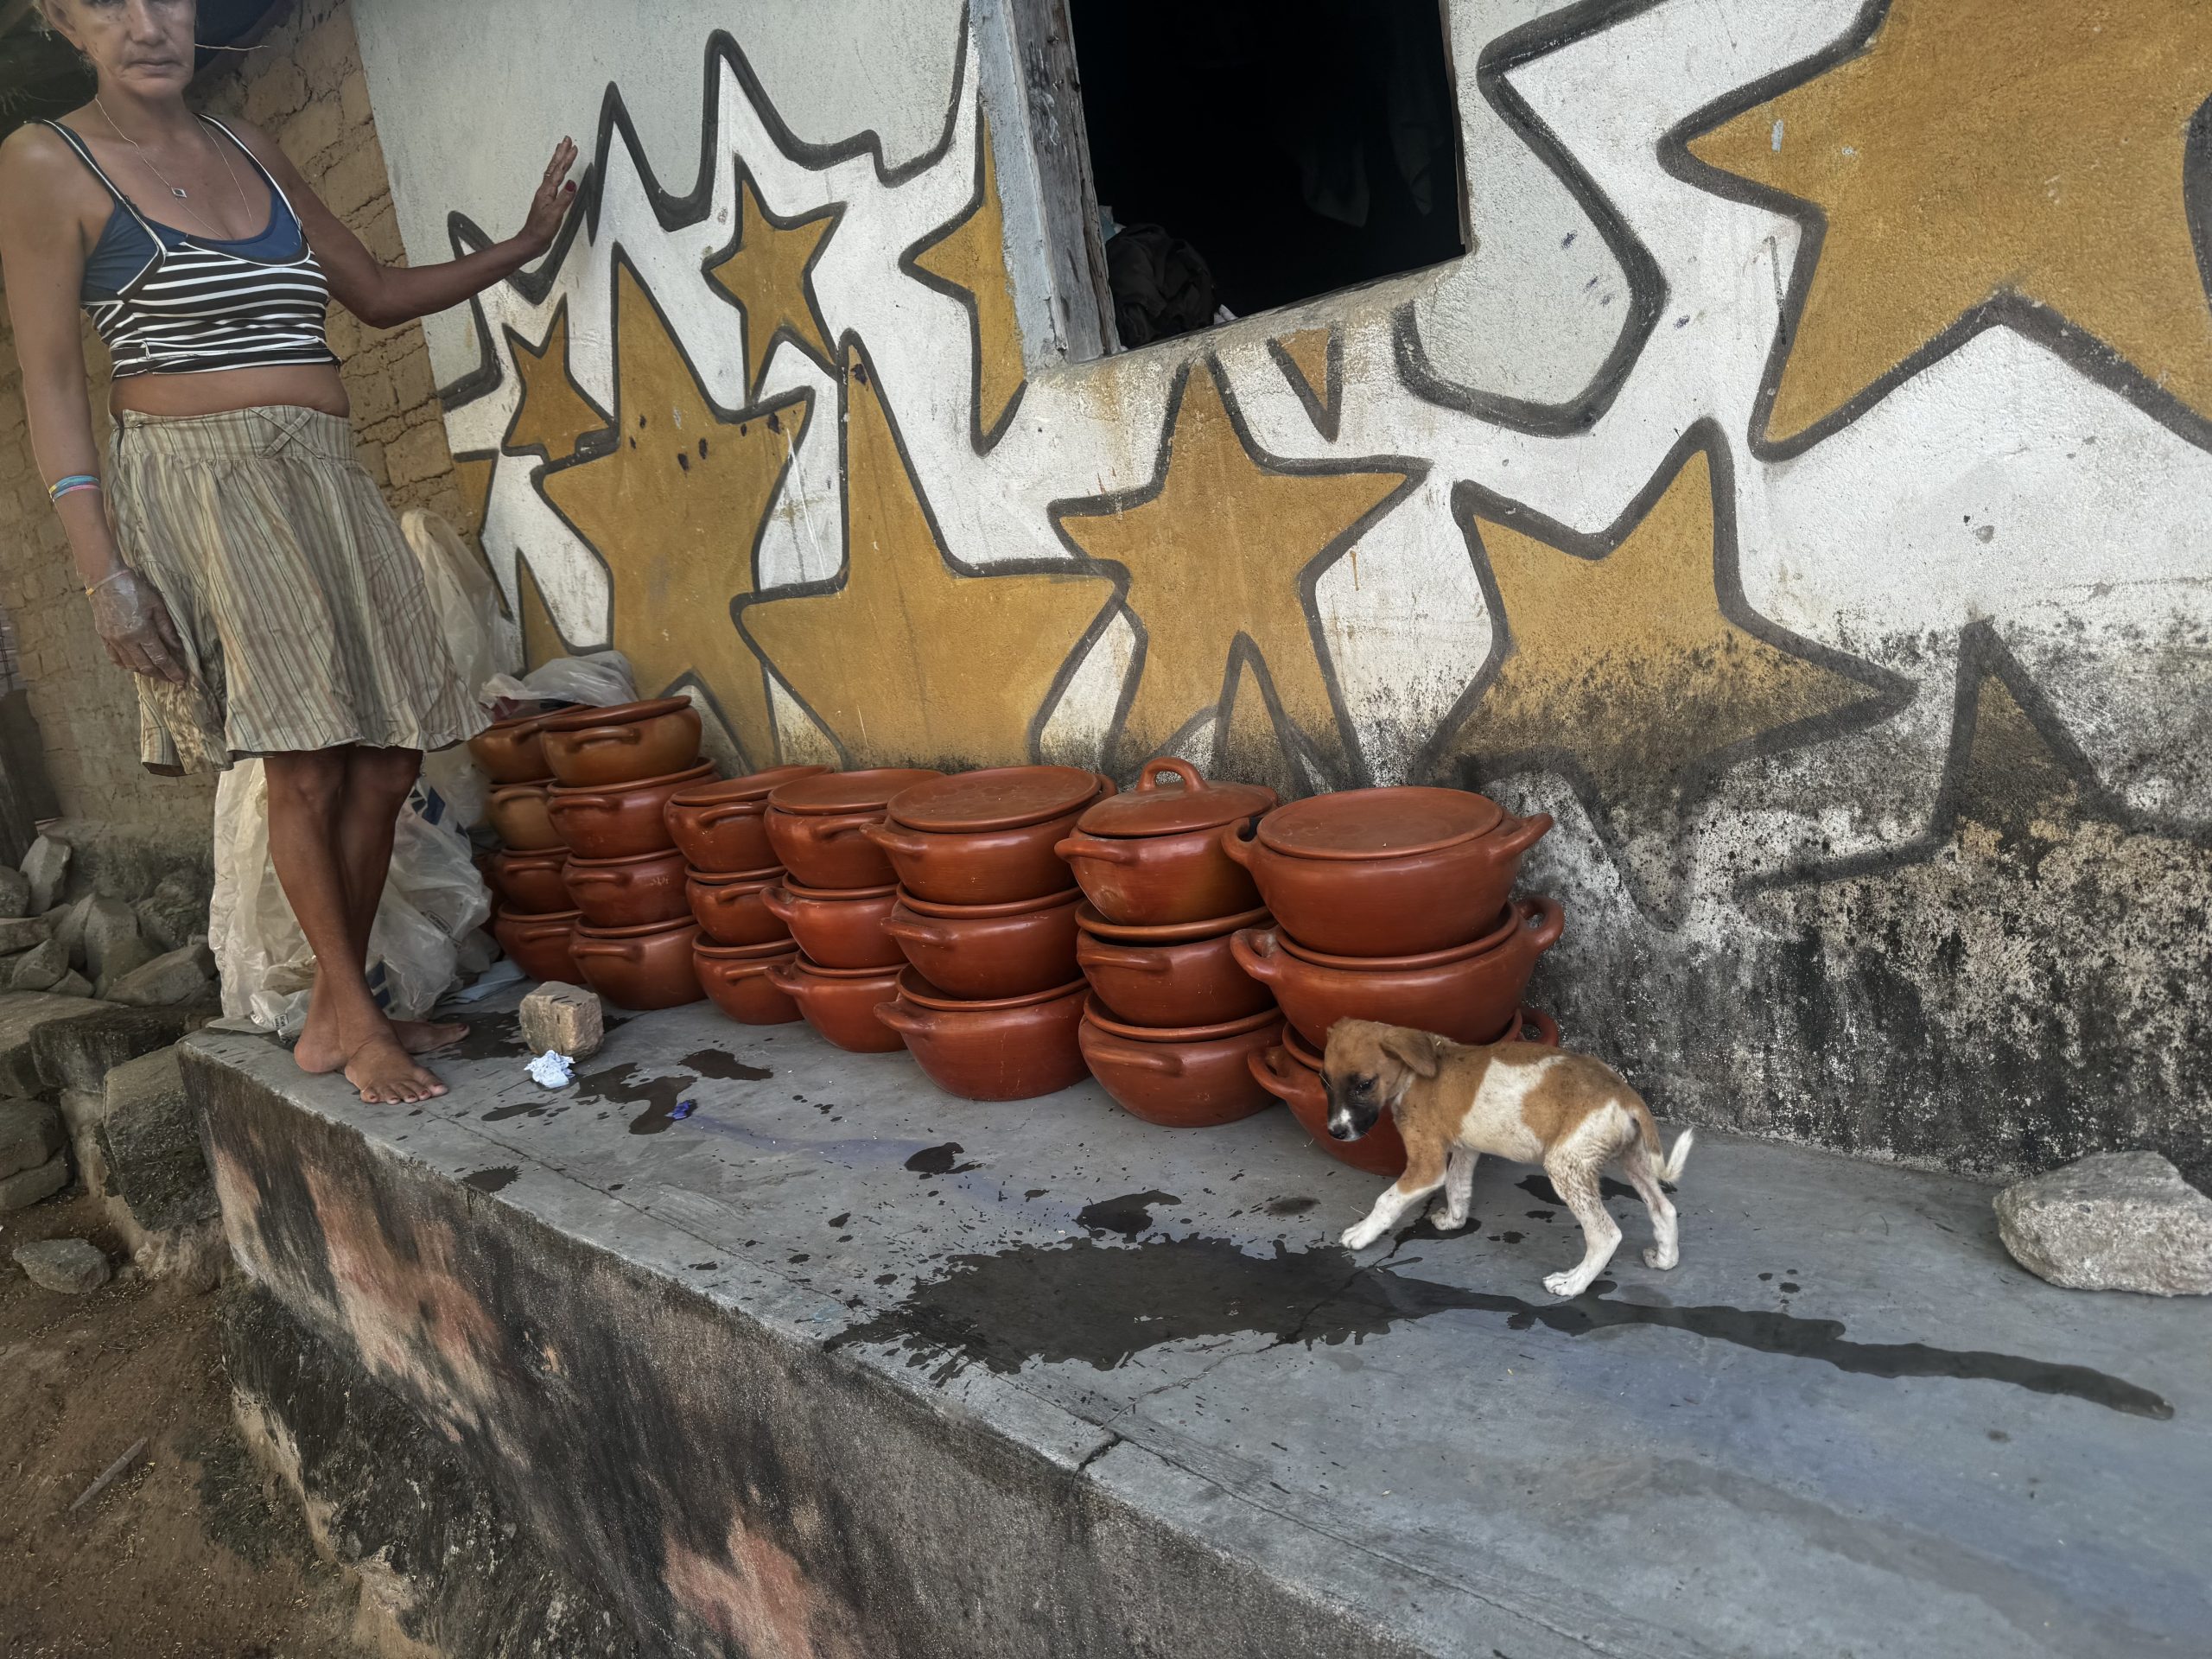 Arte nas casas, artesanato e exclusão social: Pasmado e os paradoxos do Brasil profundo